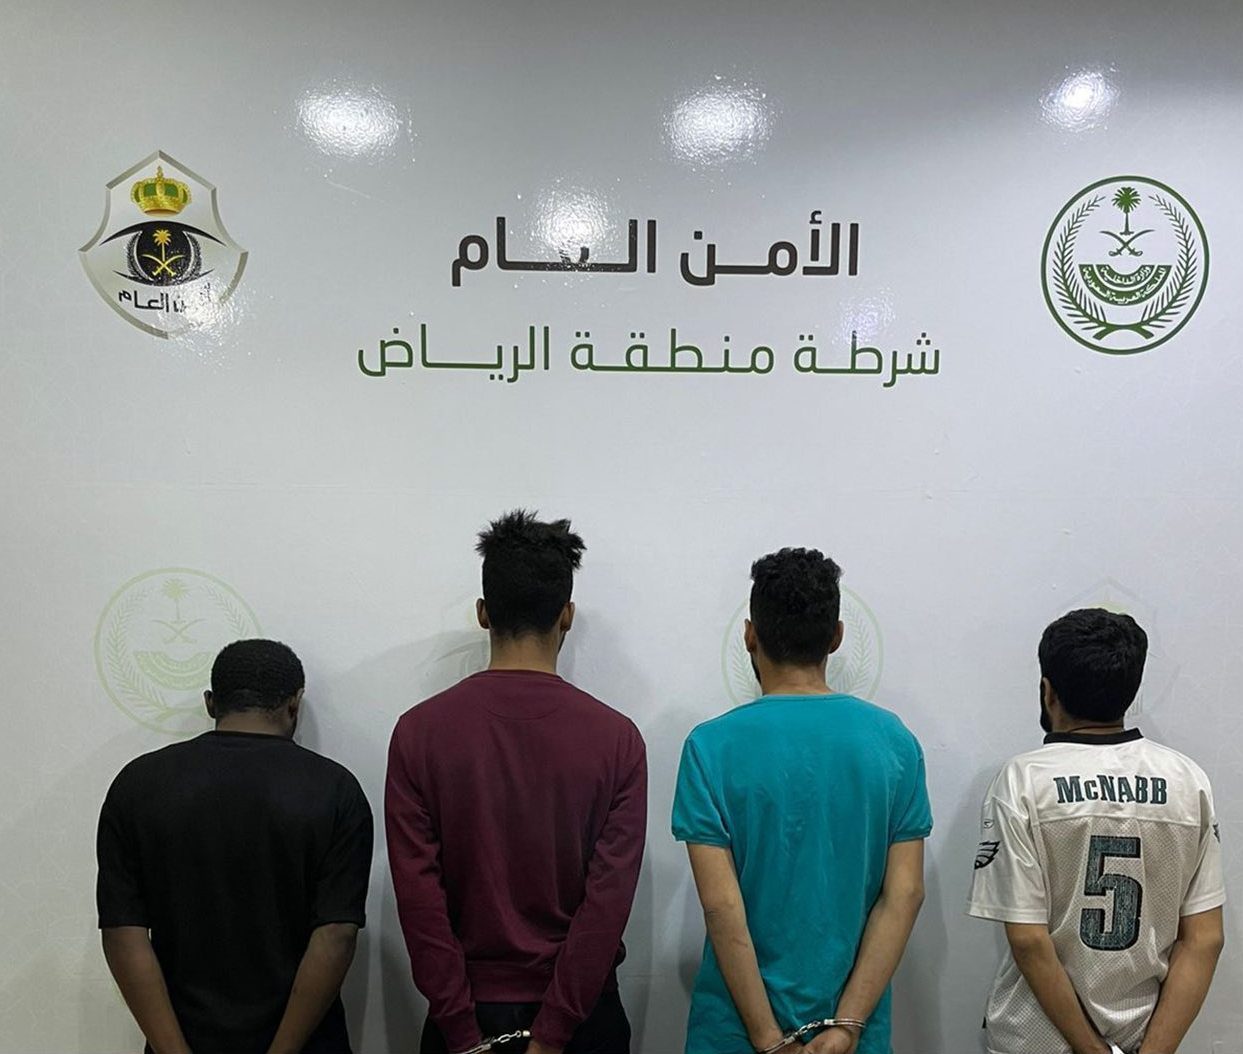 القبض على 4 أشخاص لارتكابهم حوادث سرقة وسلب في الرياض